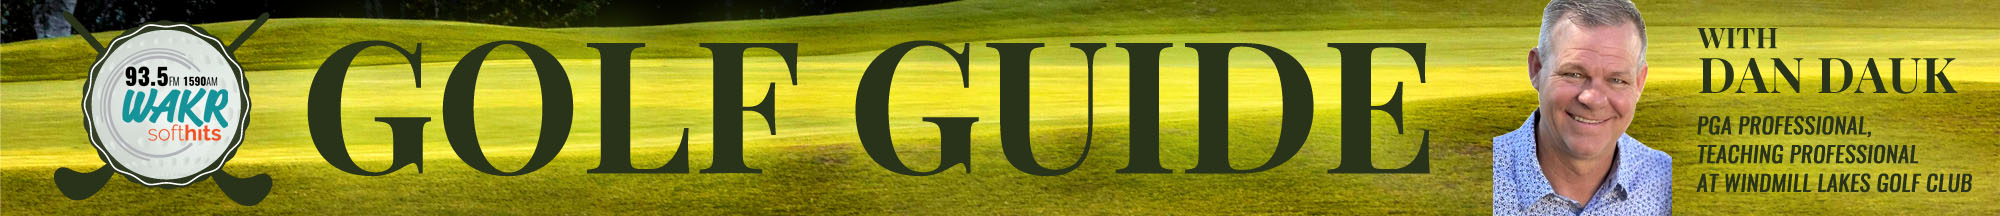 golfGuide webHeader